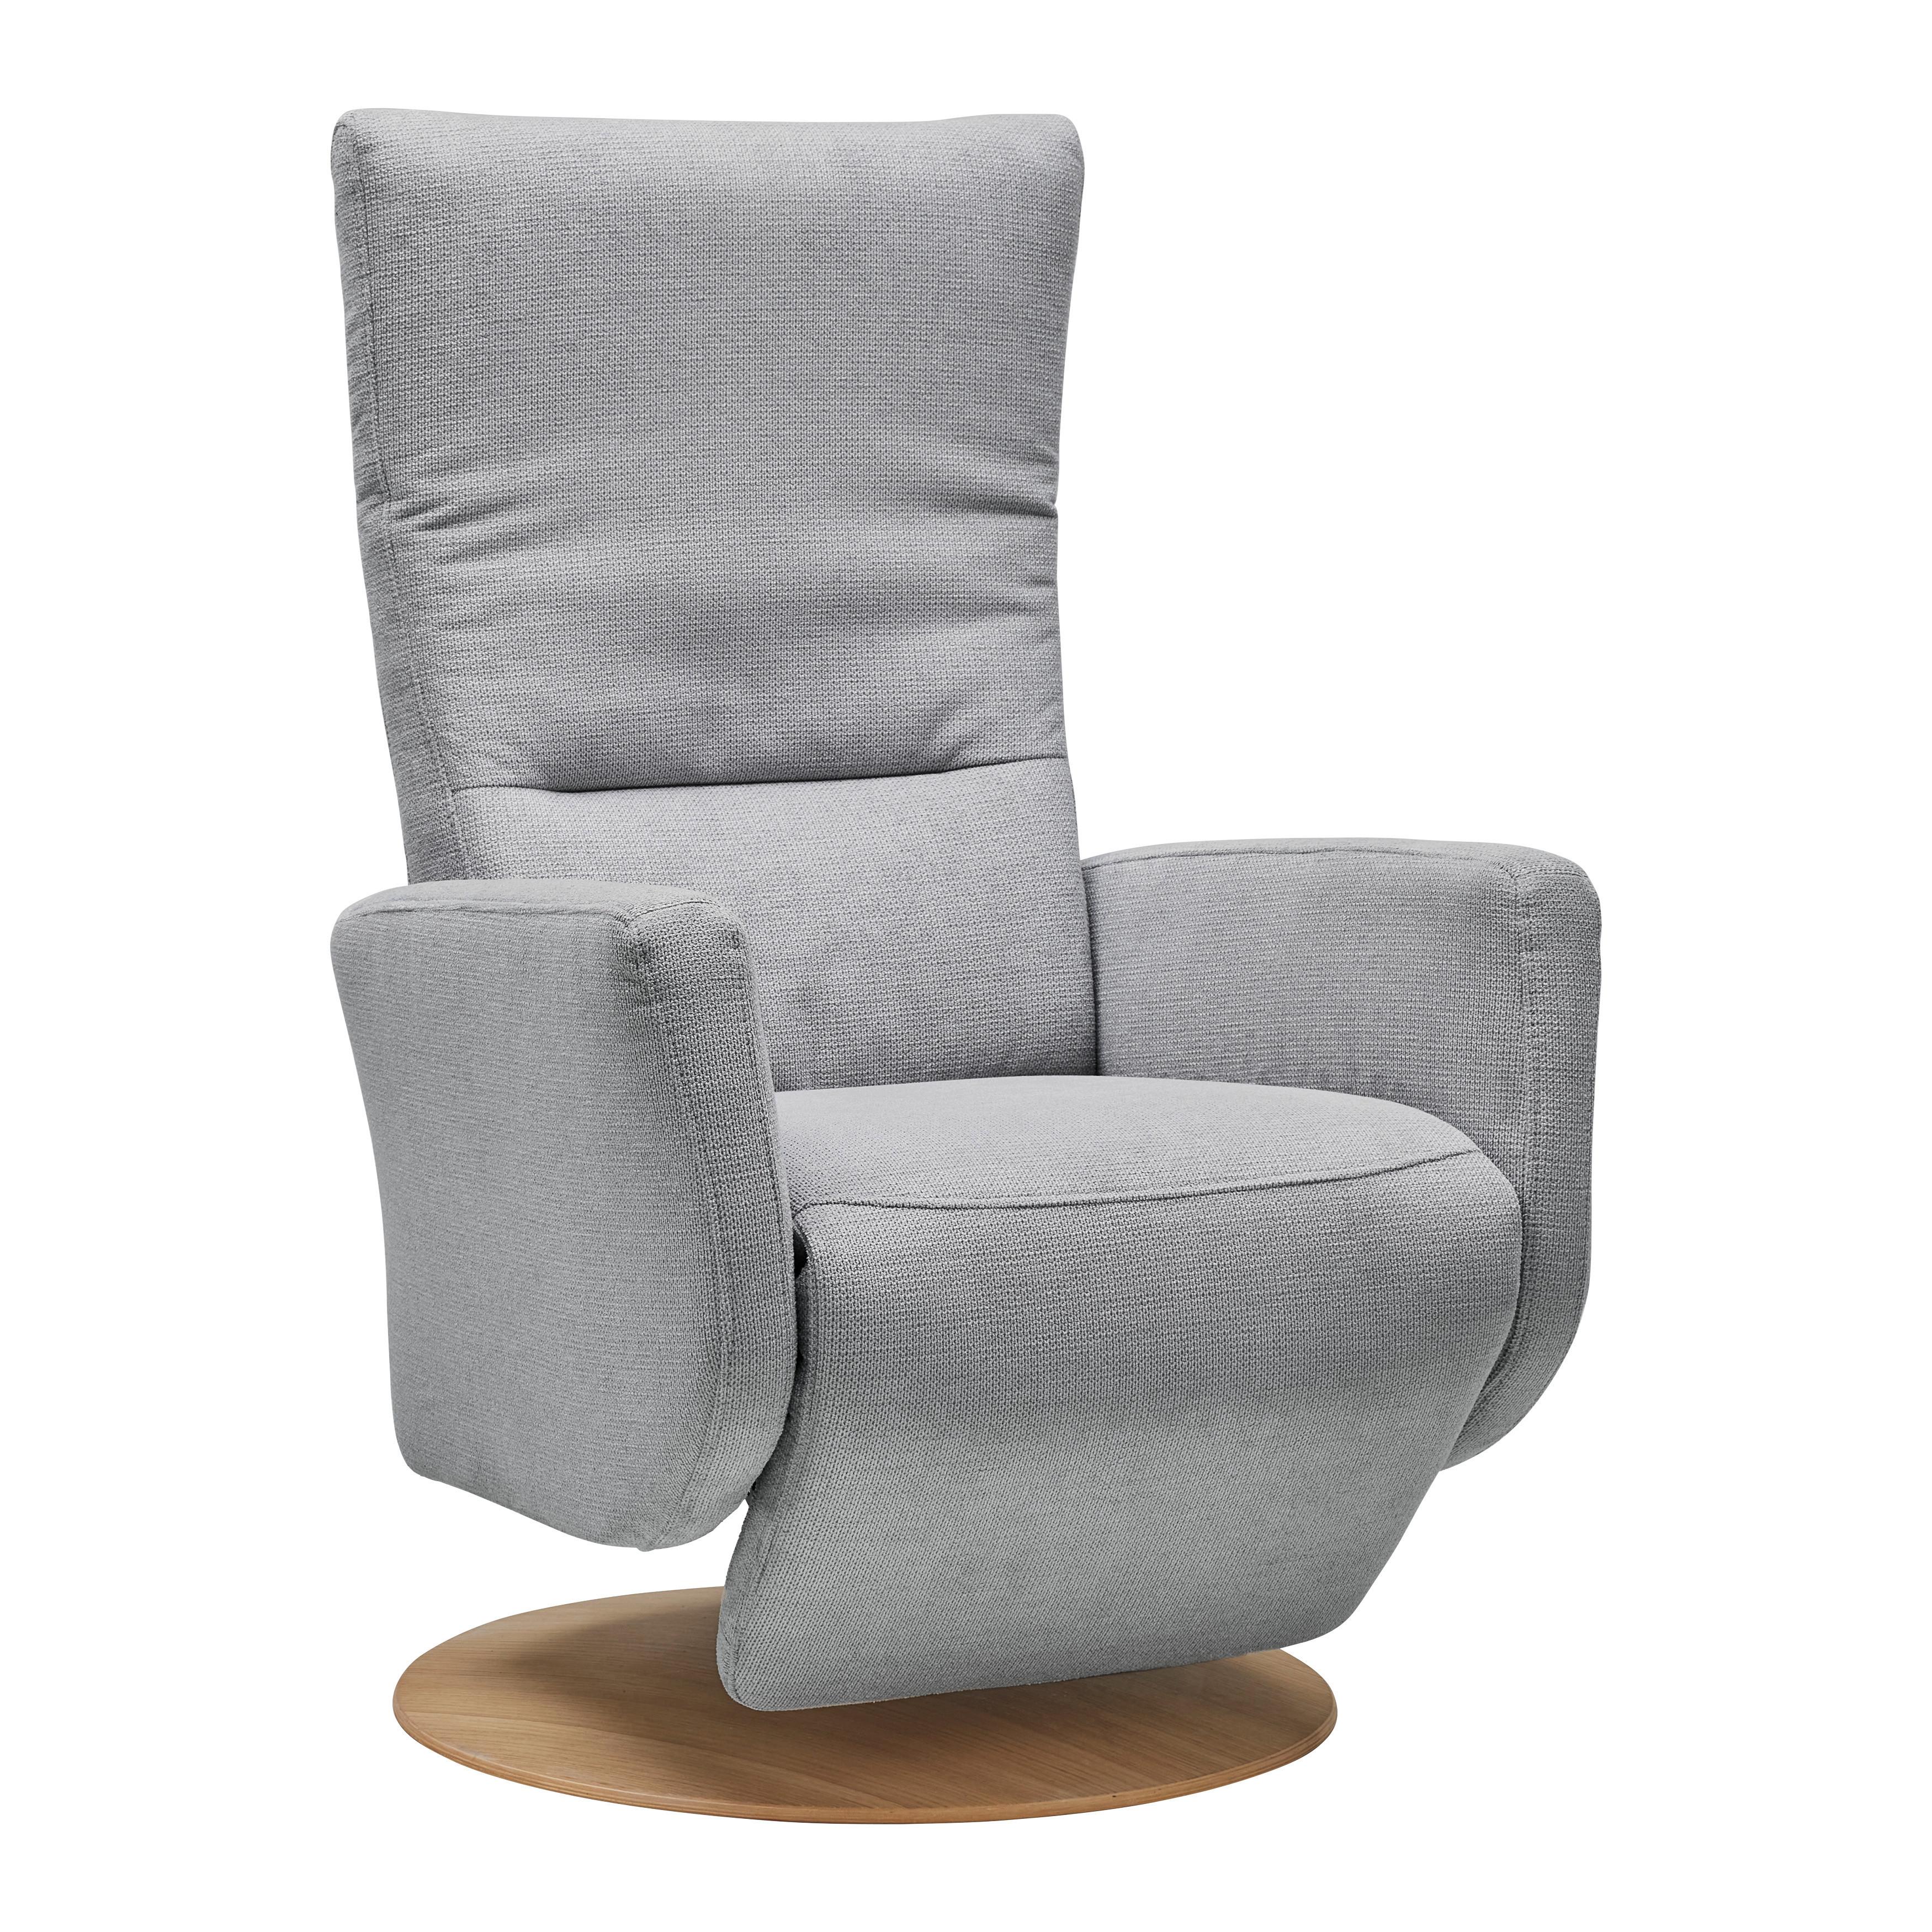 Relaxsessel Sitting 1 in Silber - Wildeiche/Silberfarben, MODERN, Kunststoff/Textil (70/111/80cm) - Premium Living